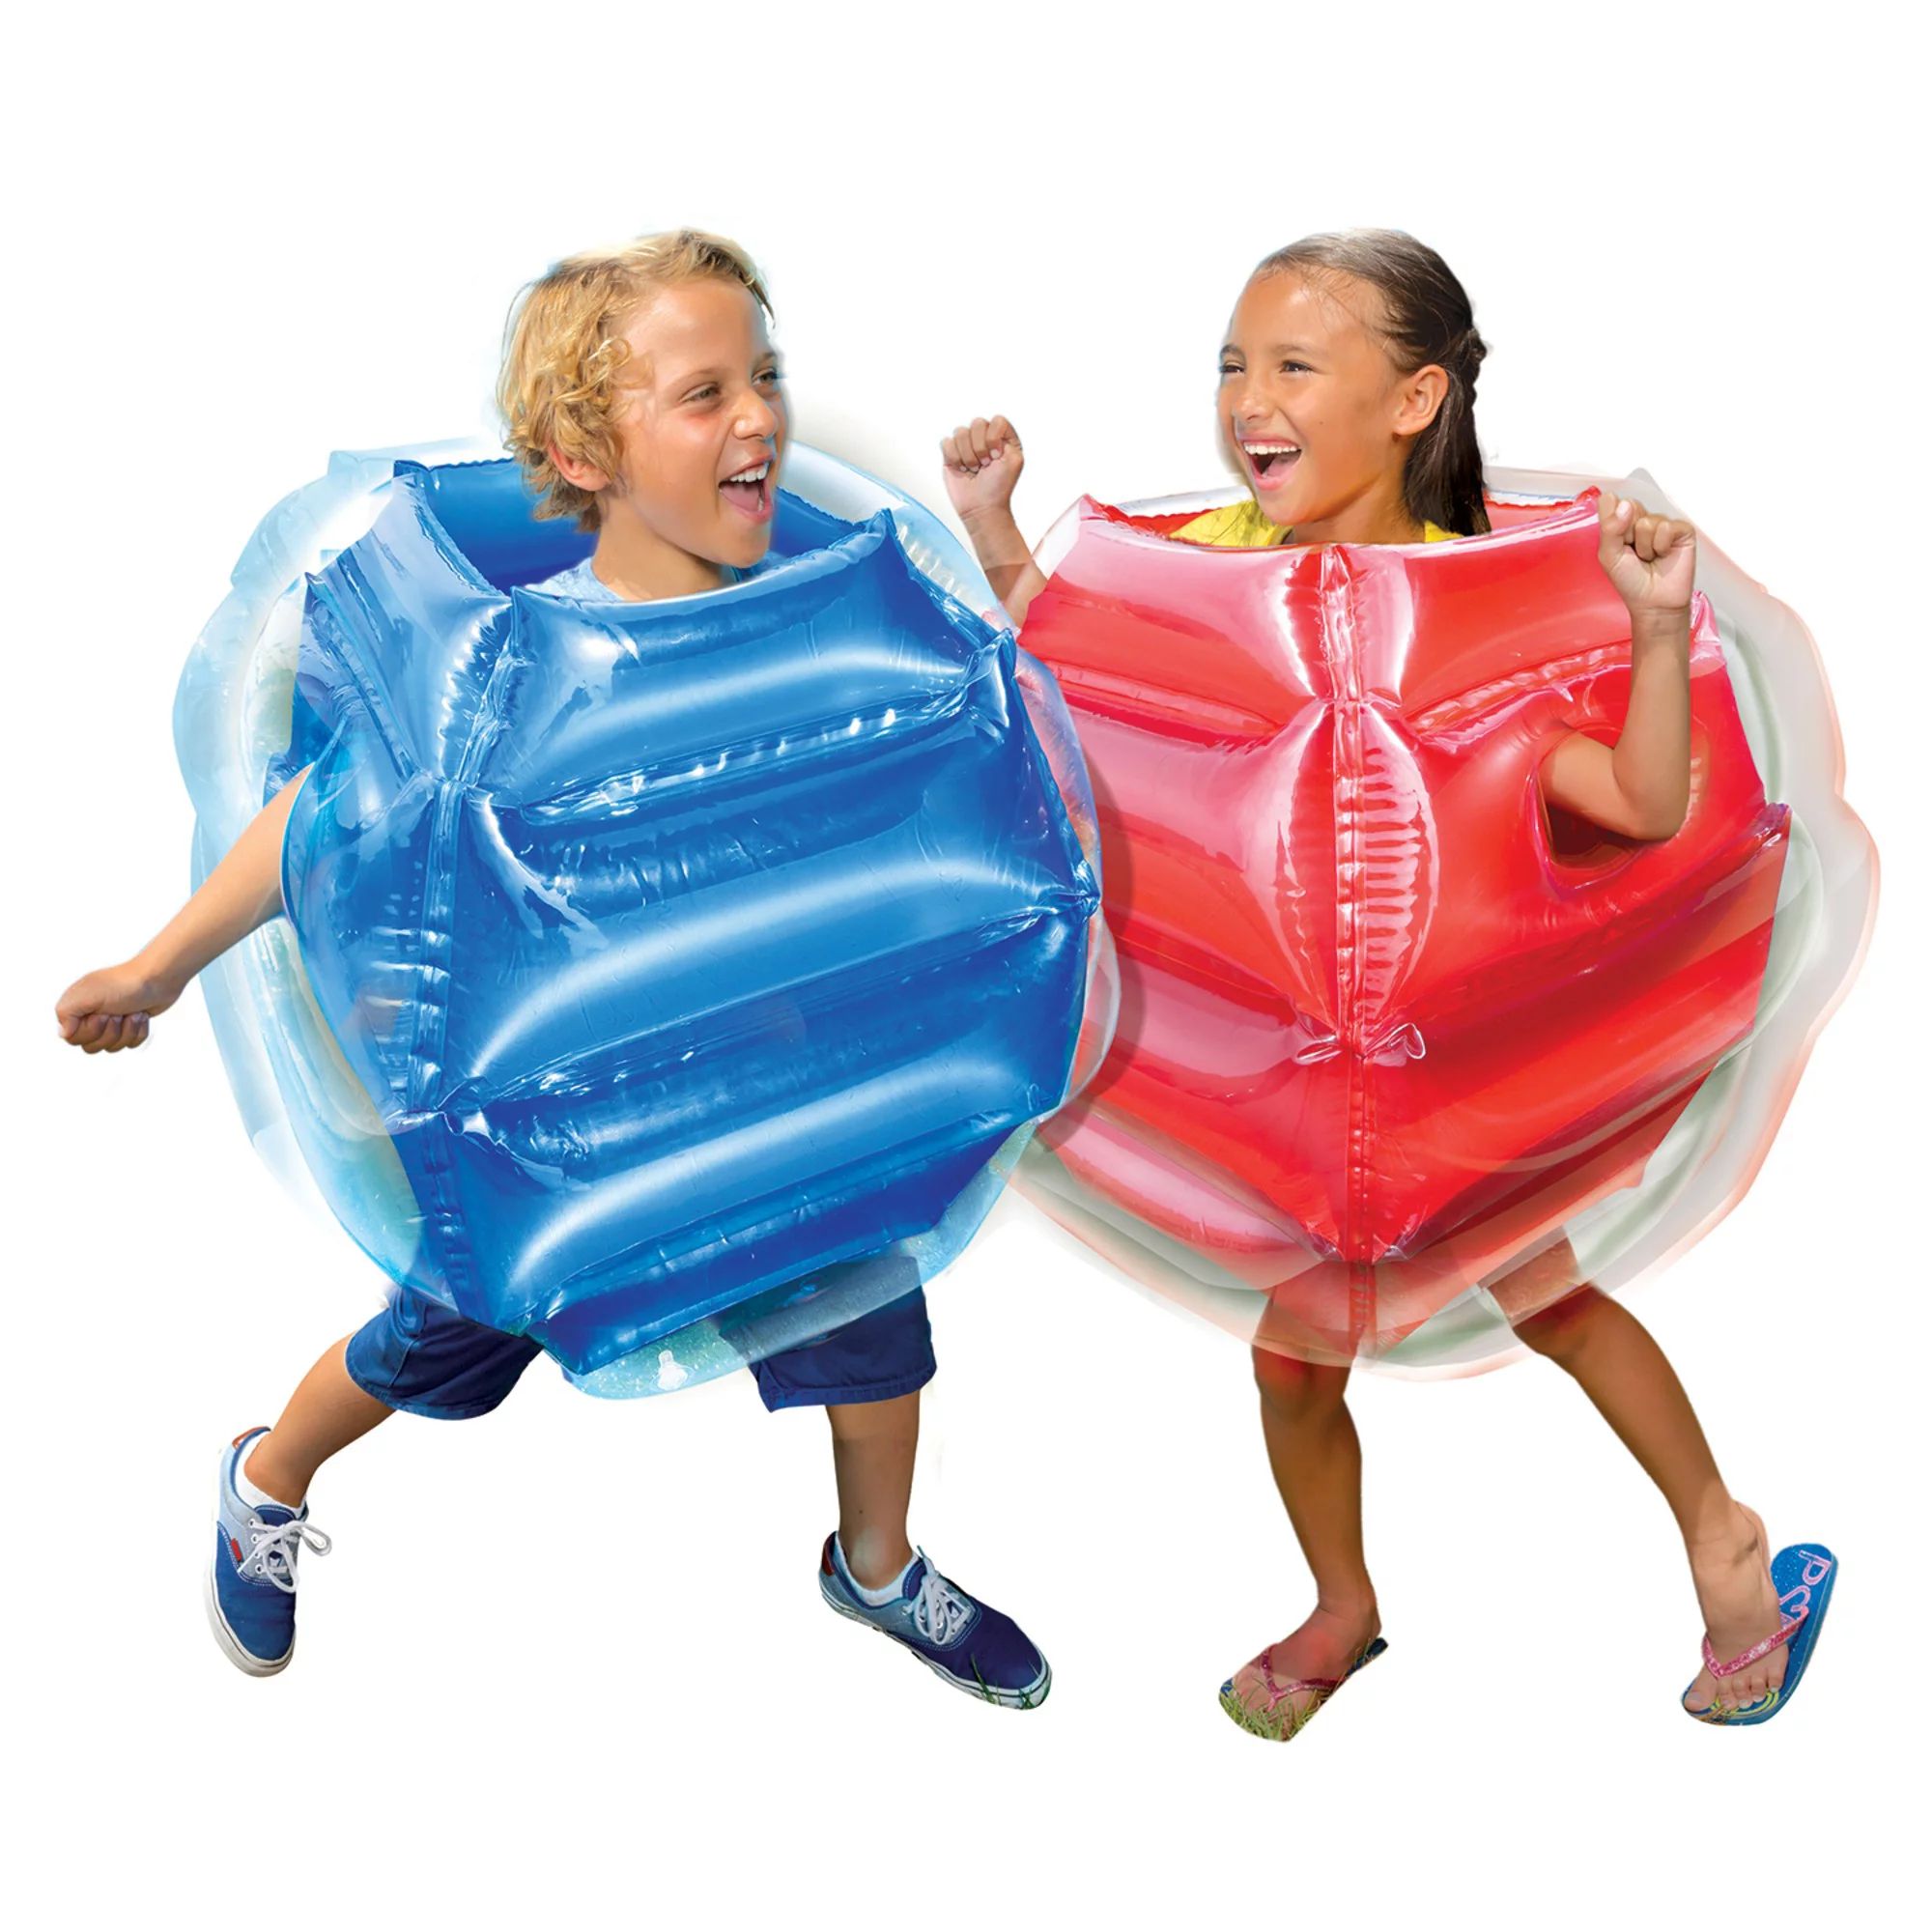 Banzai Bump N Bounce Body Bumpers in Red & Blue, 2 Bumpers - Bump & Bop Kids Toy - Walmart.com | Walmart (US)